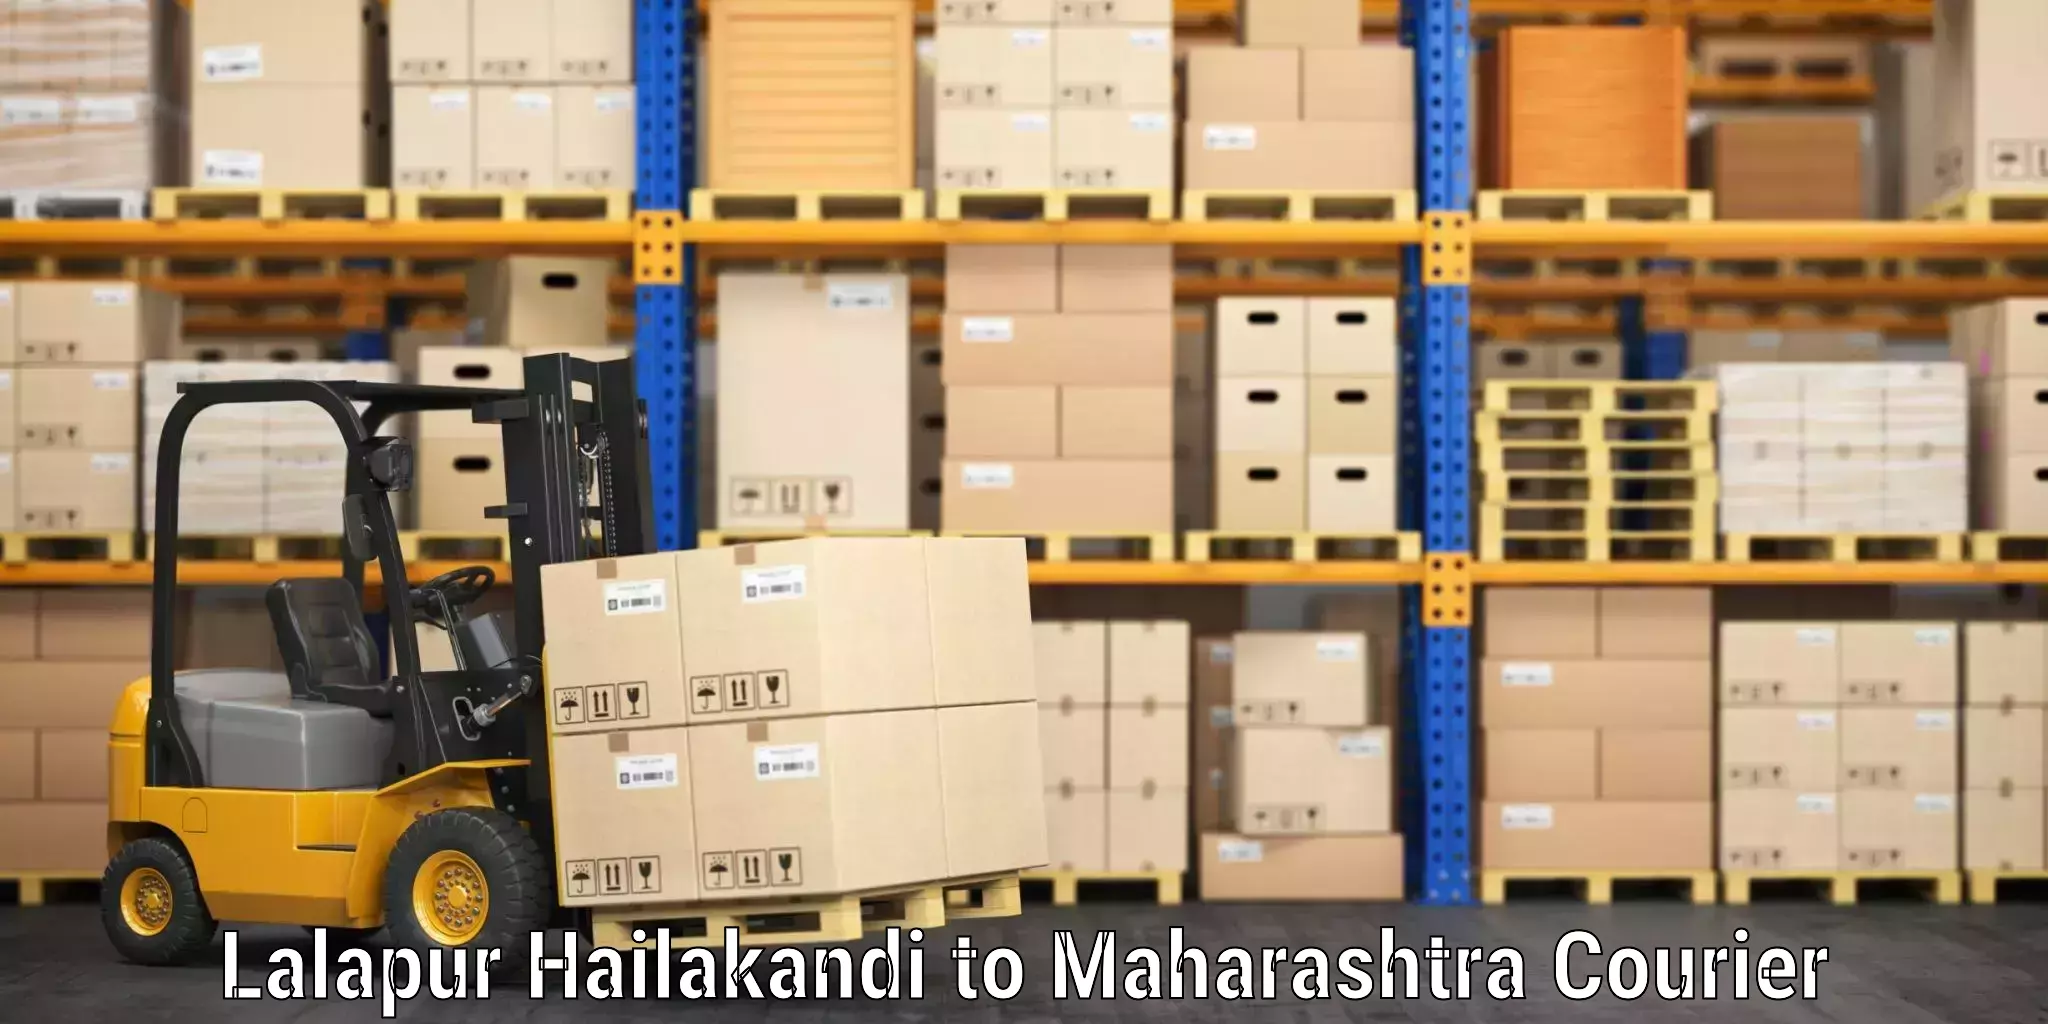 Luggage transport solutions Lalapur Hailakandi to Raver